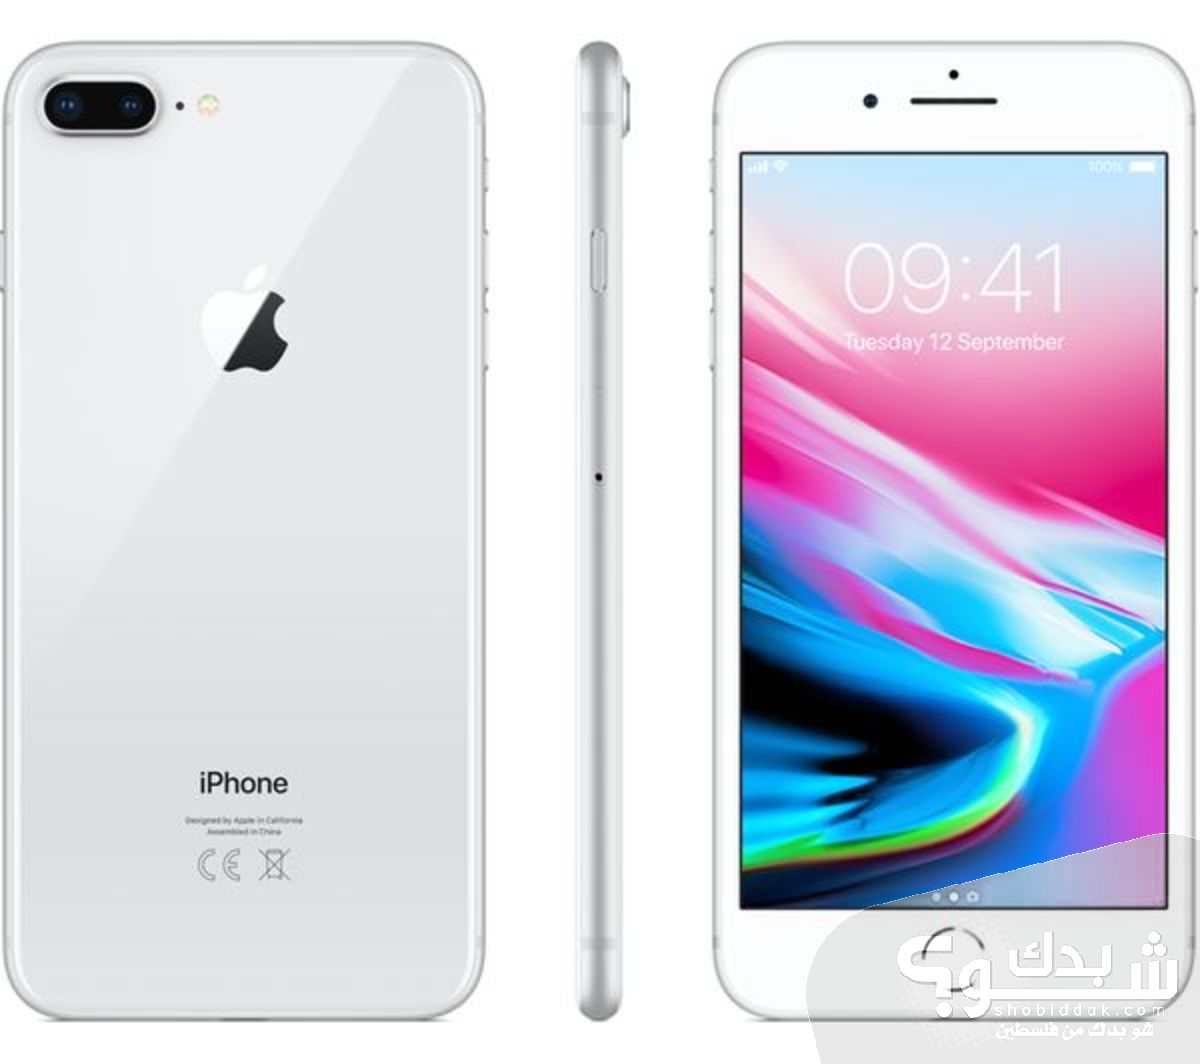 Apple ايفون 8 بلس - جديد | شو بدك من فلسطين؟